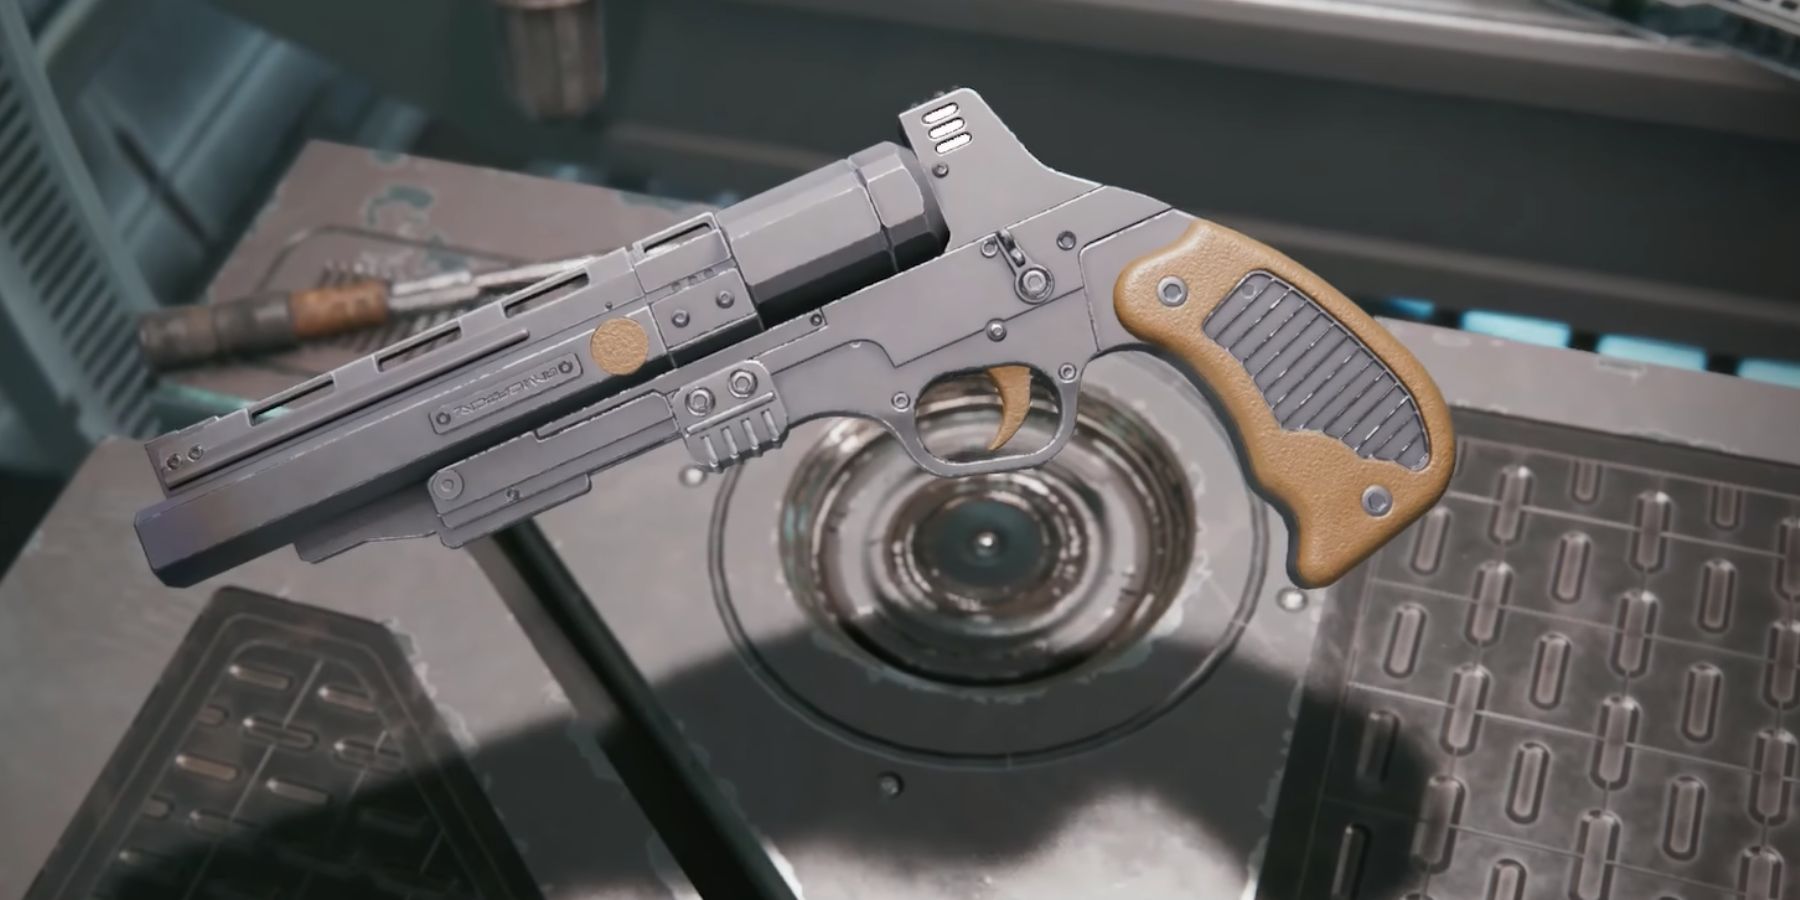 RSKF-44 heavy blaster pistol